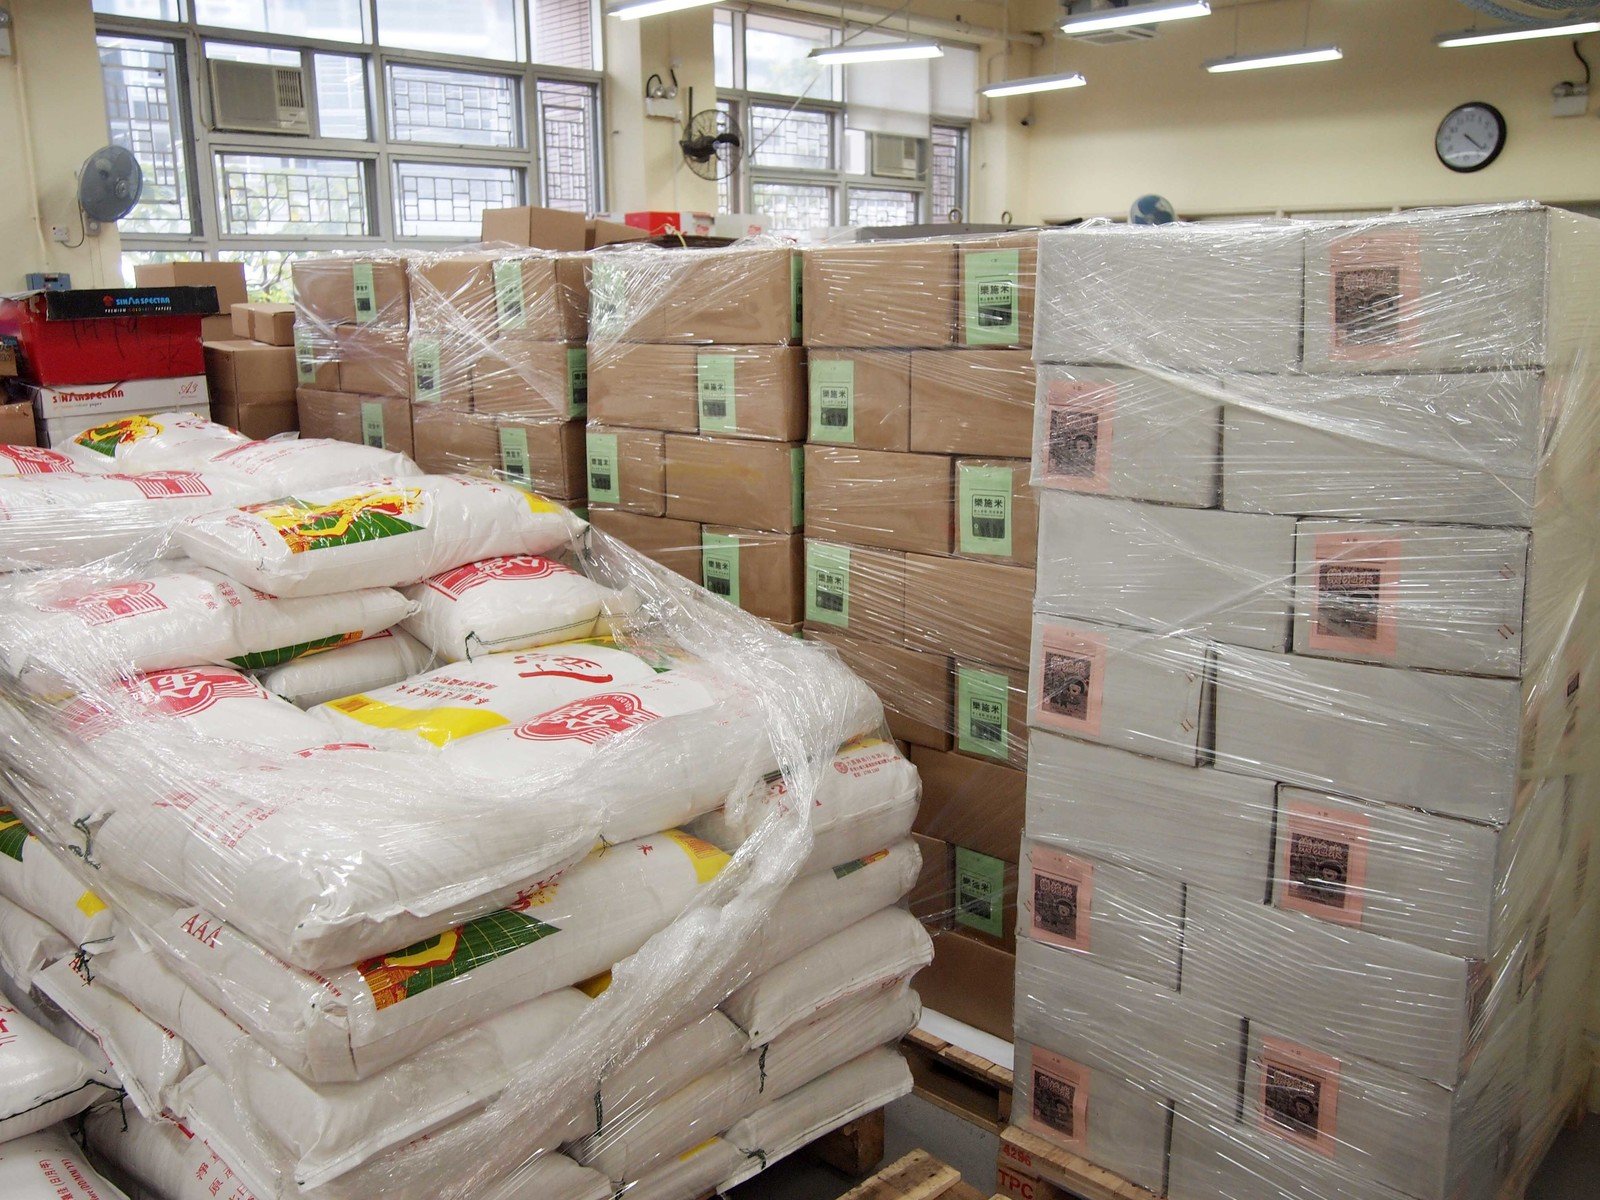 13吨白米已分装为130,000包乐施米，以迎接于港澳两地举行的「乐施米义卖大行动」。